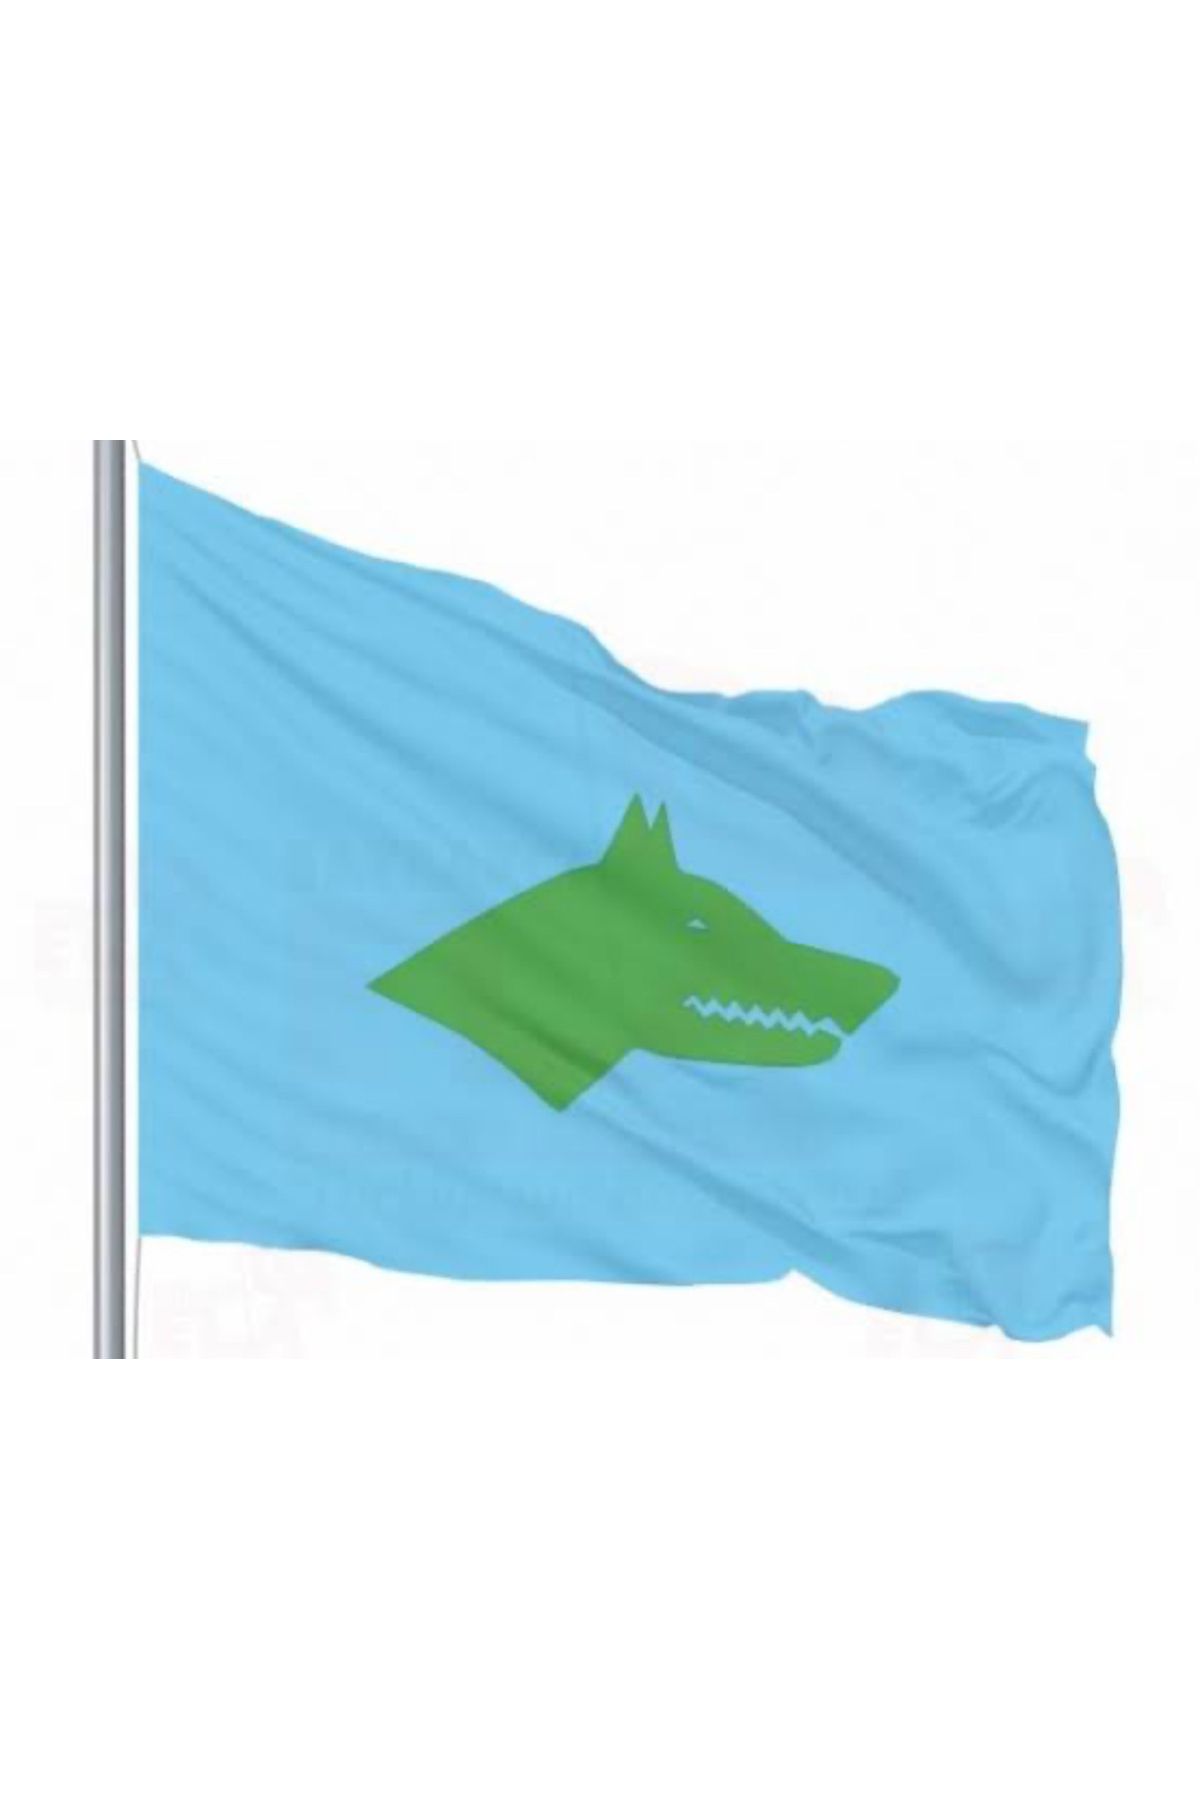 Özel Flama Bayrak Göktürk bayrağı mavi zemin yeşil kurt 70x105cm